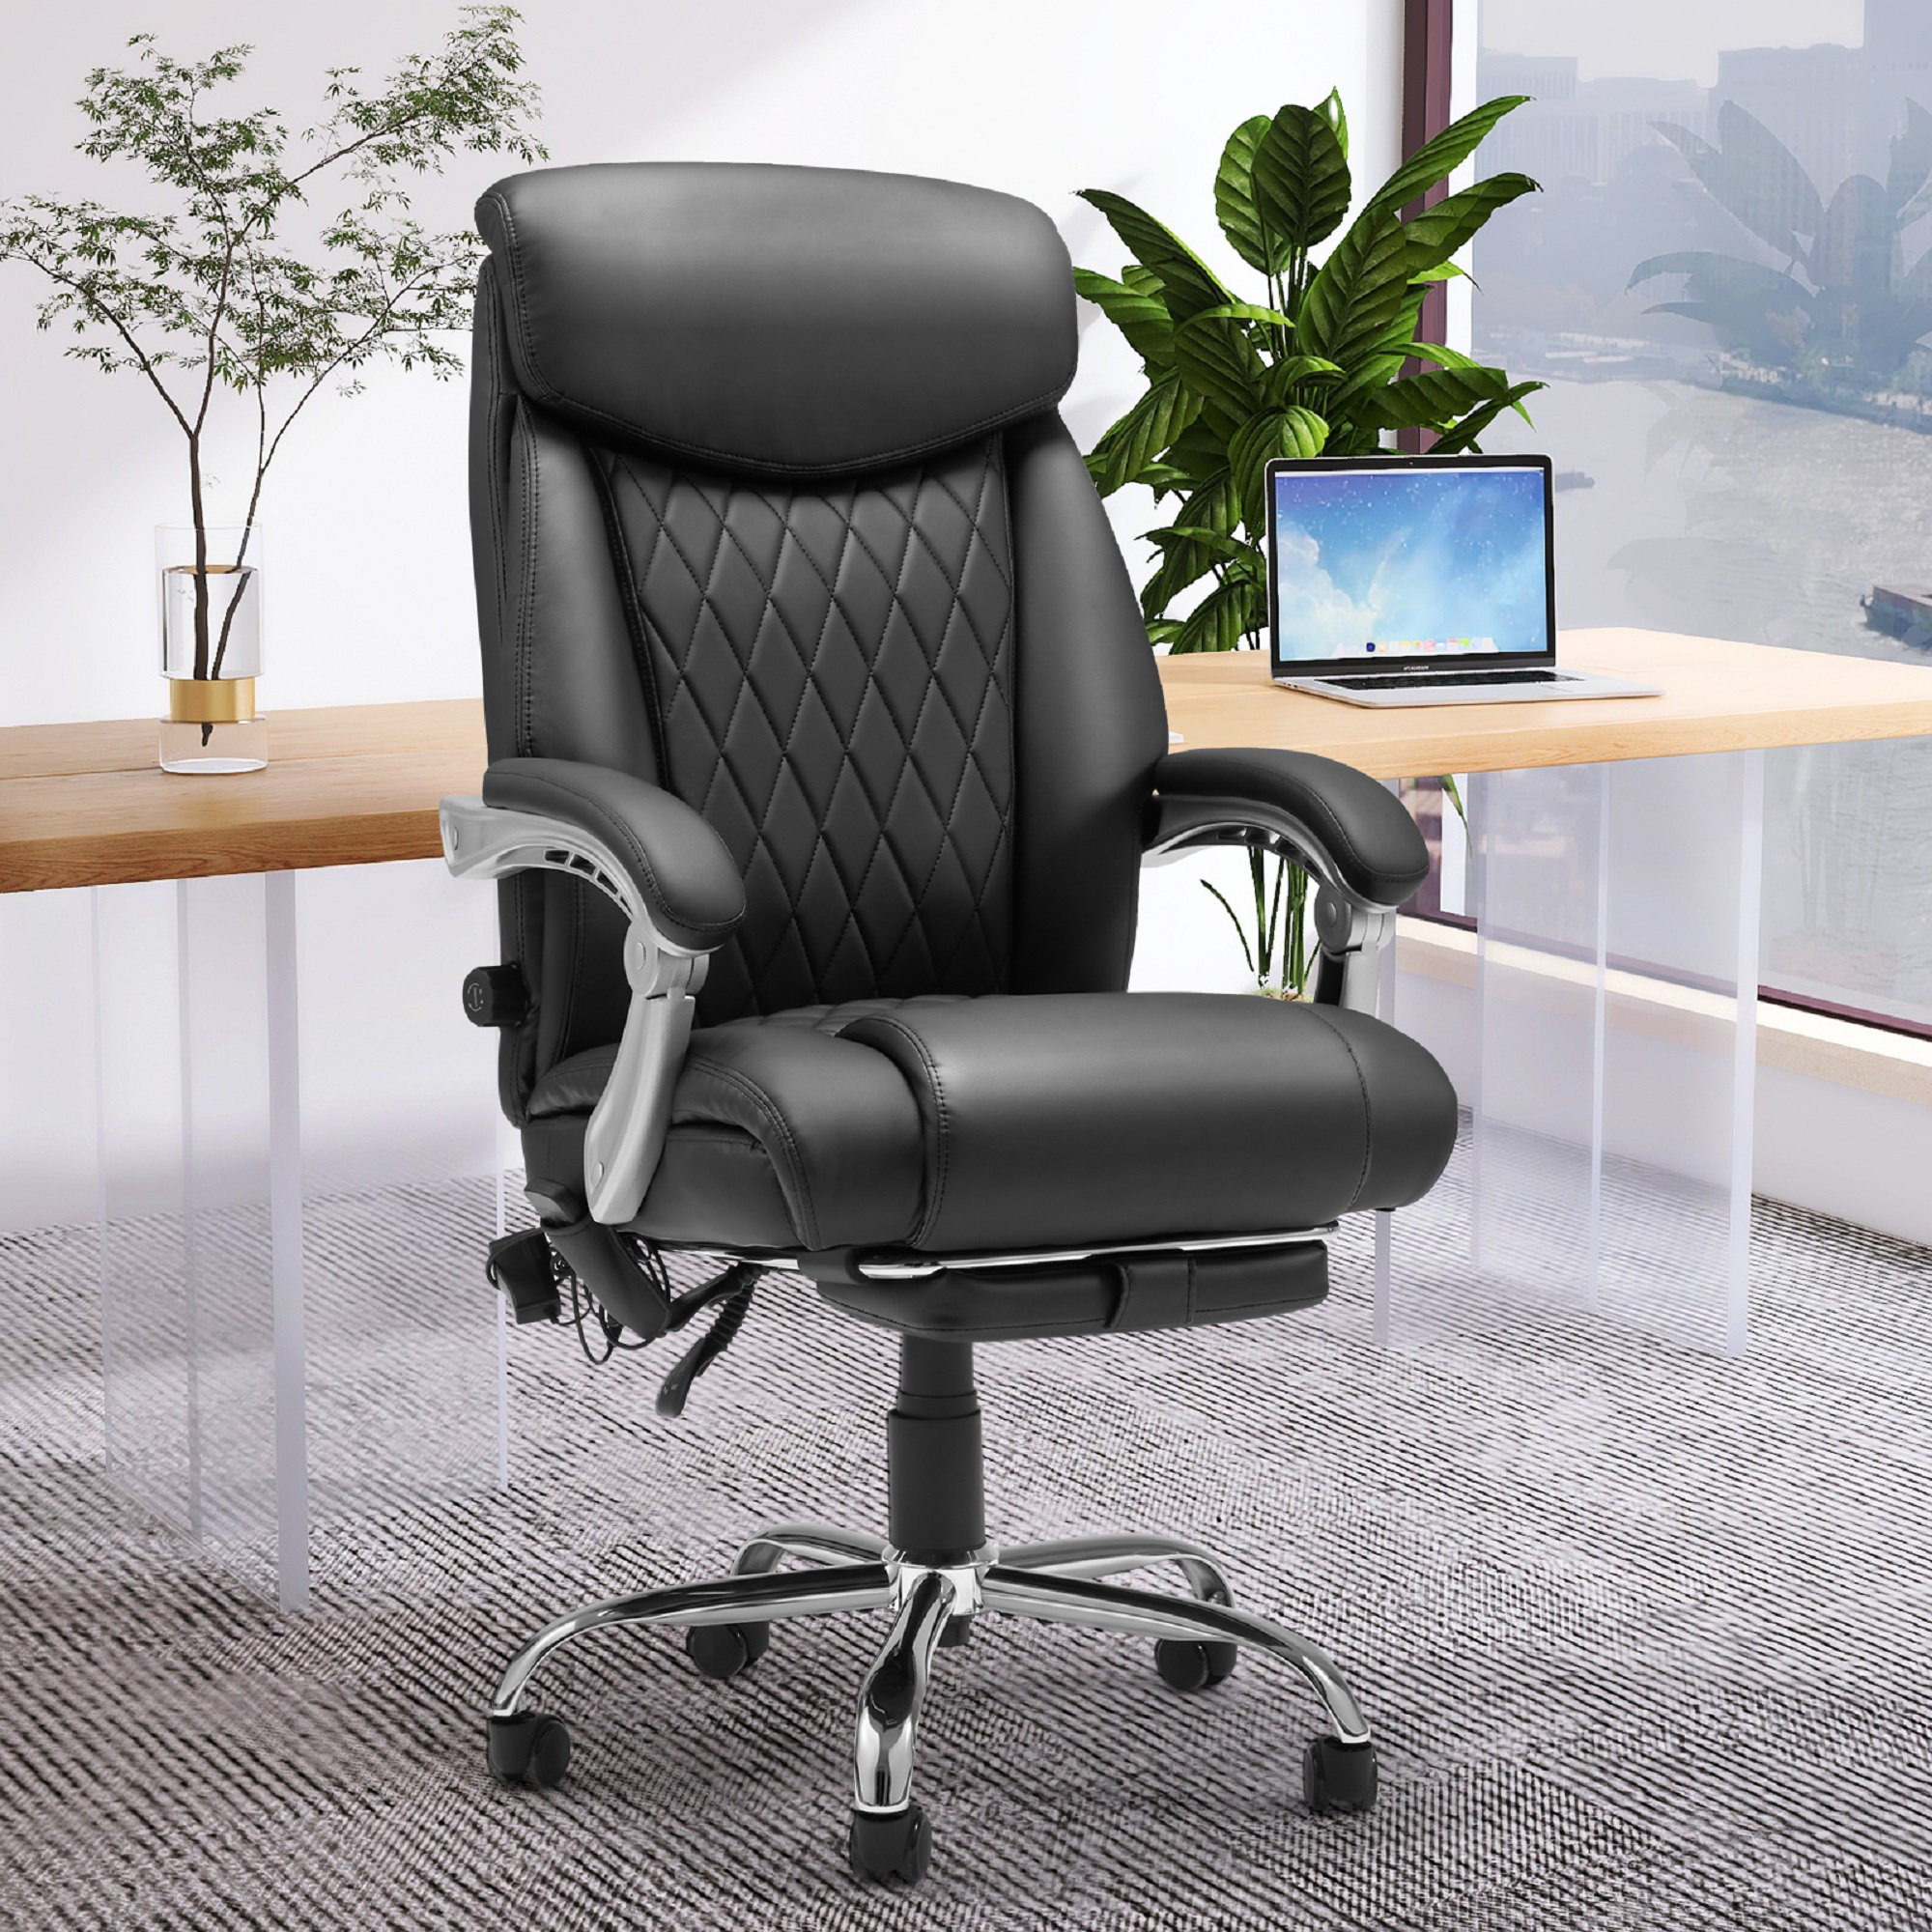 https://assets.wfcdn.com/im/07352256/compr-r85/2270/227094235/hooriya-ergonomic-heated-massage-executive-chair.jpg